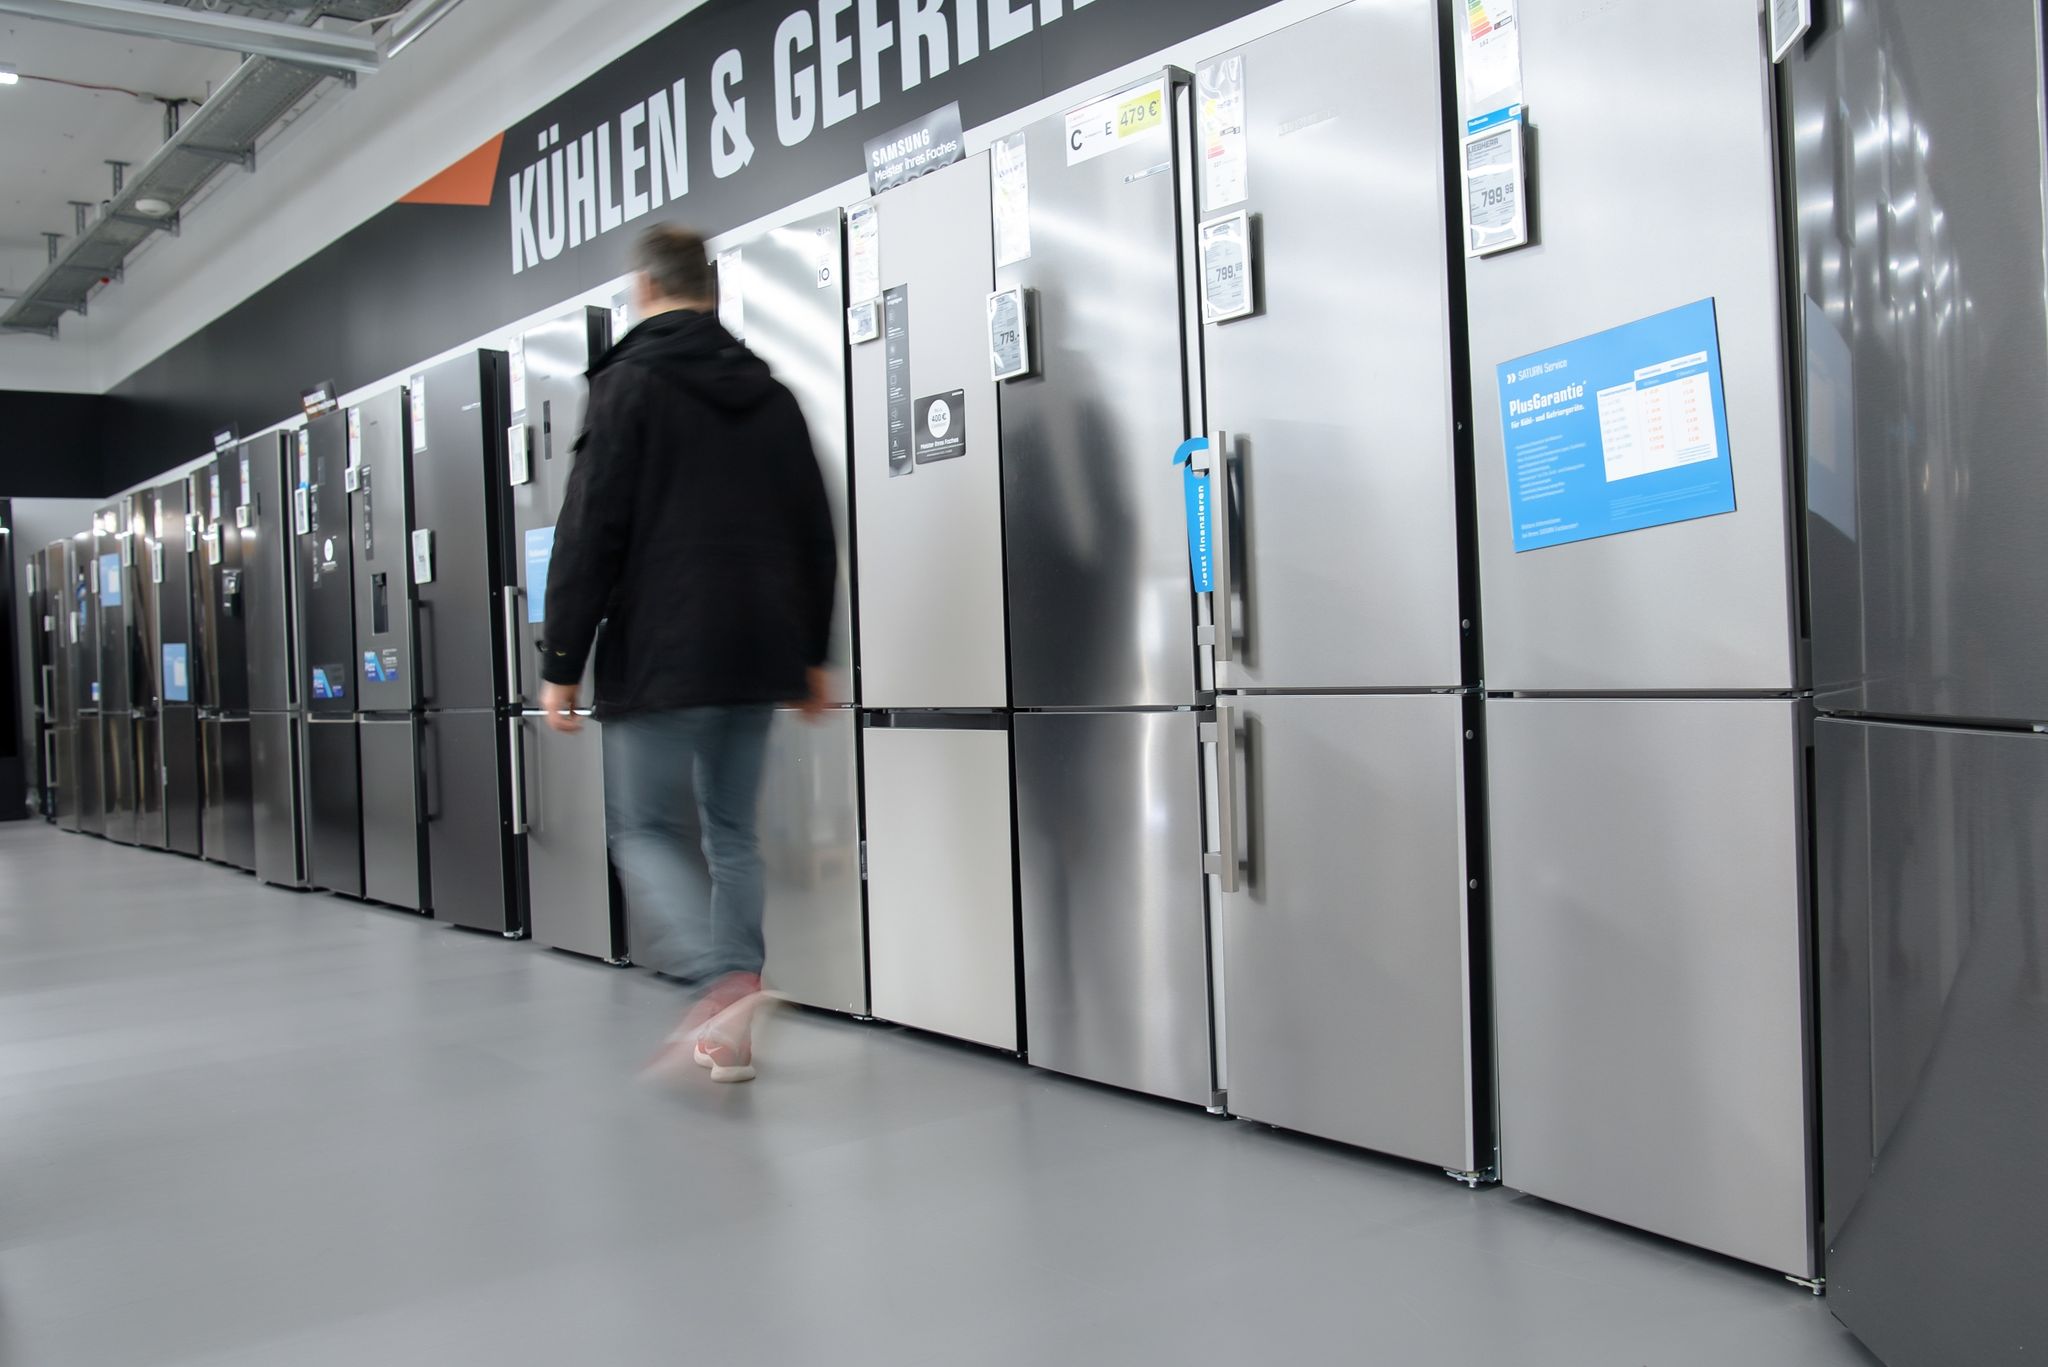 Die Wahl des passenden Kühlschranks ist keine leichte Aufgabe - ein Augenmerk sollte auf der Energieeffizienz liegen.